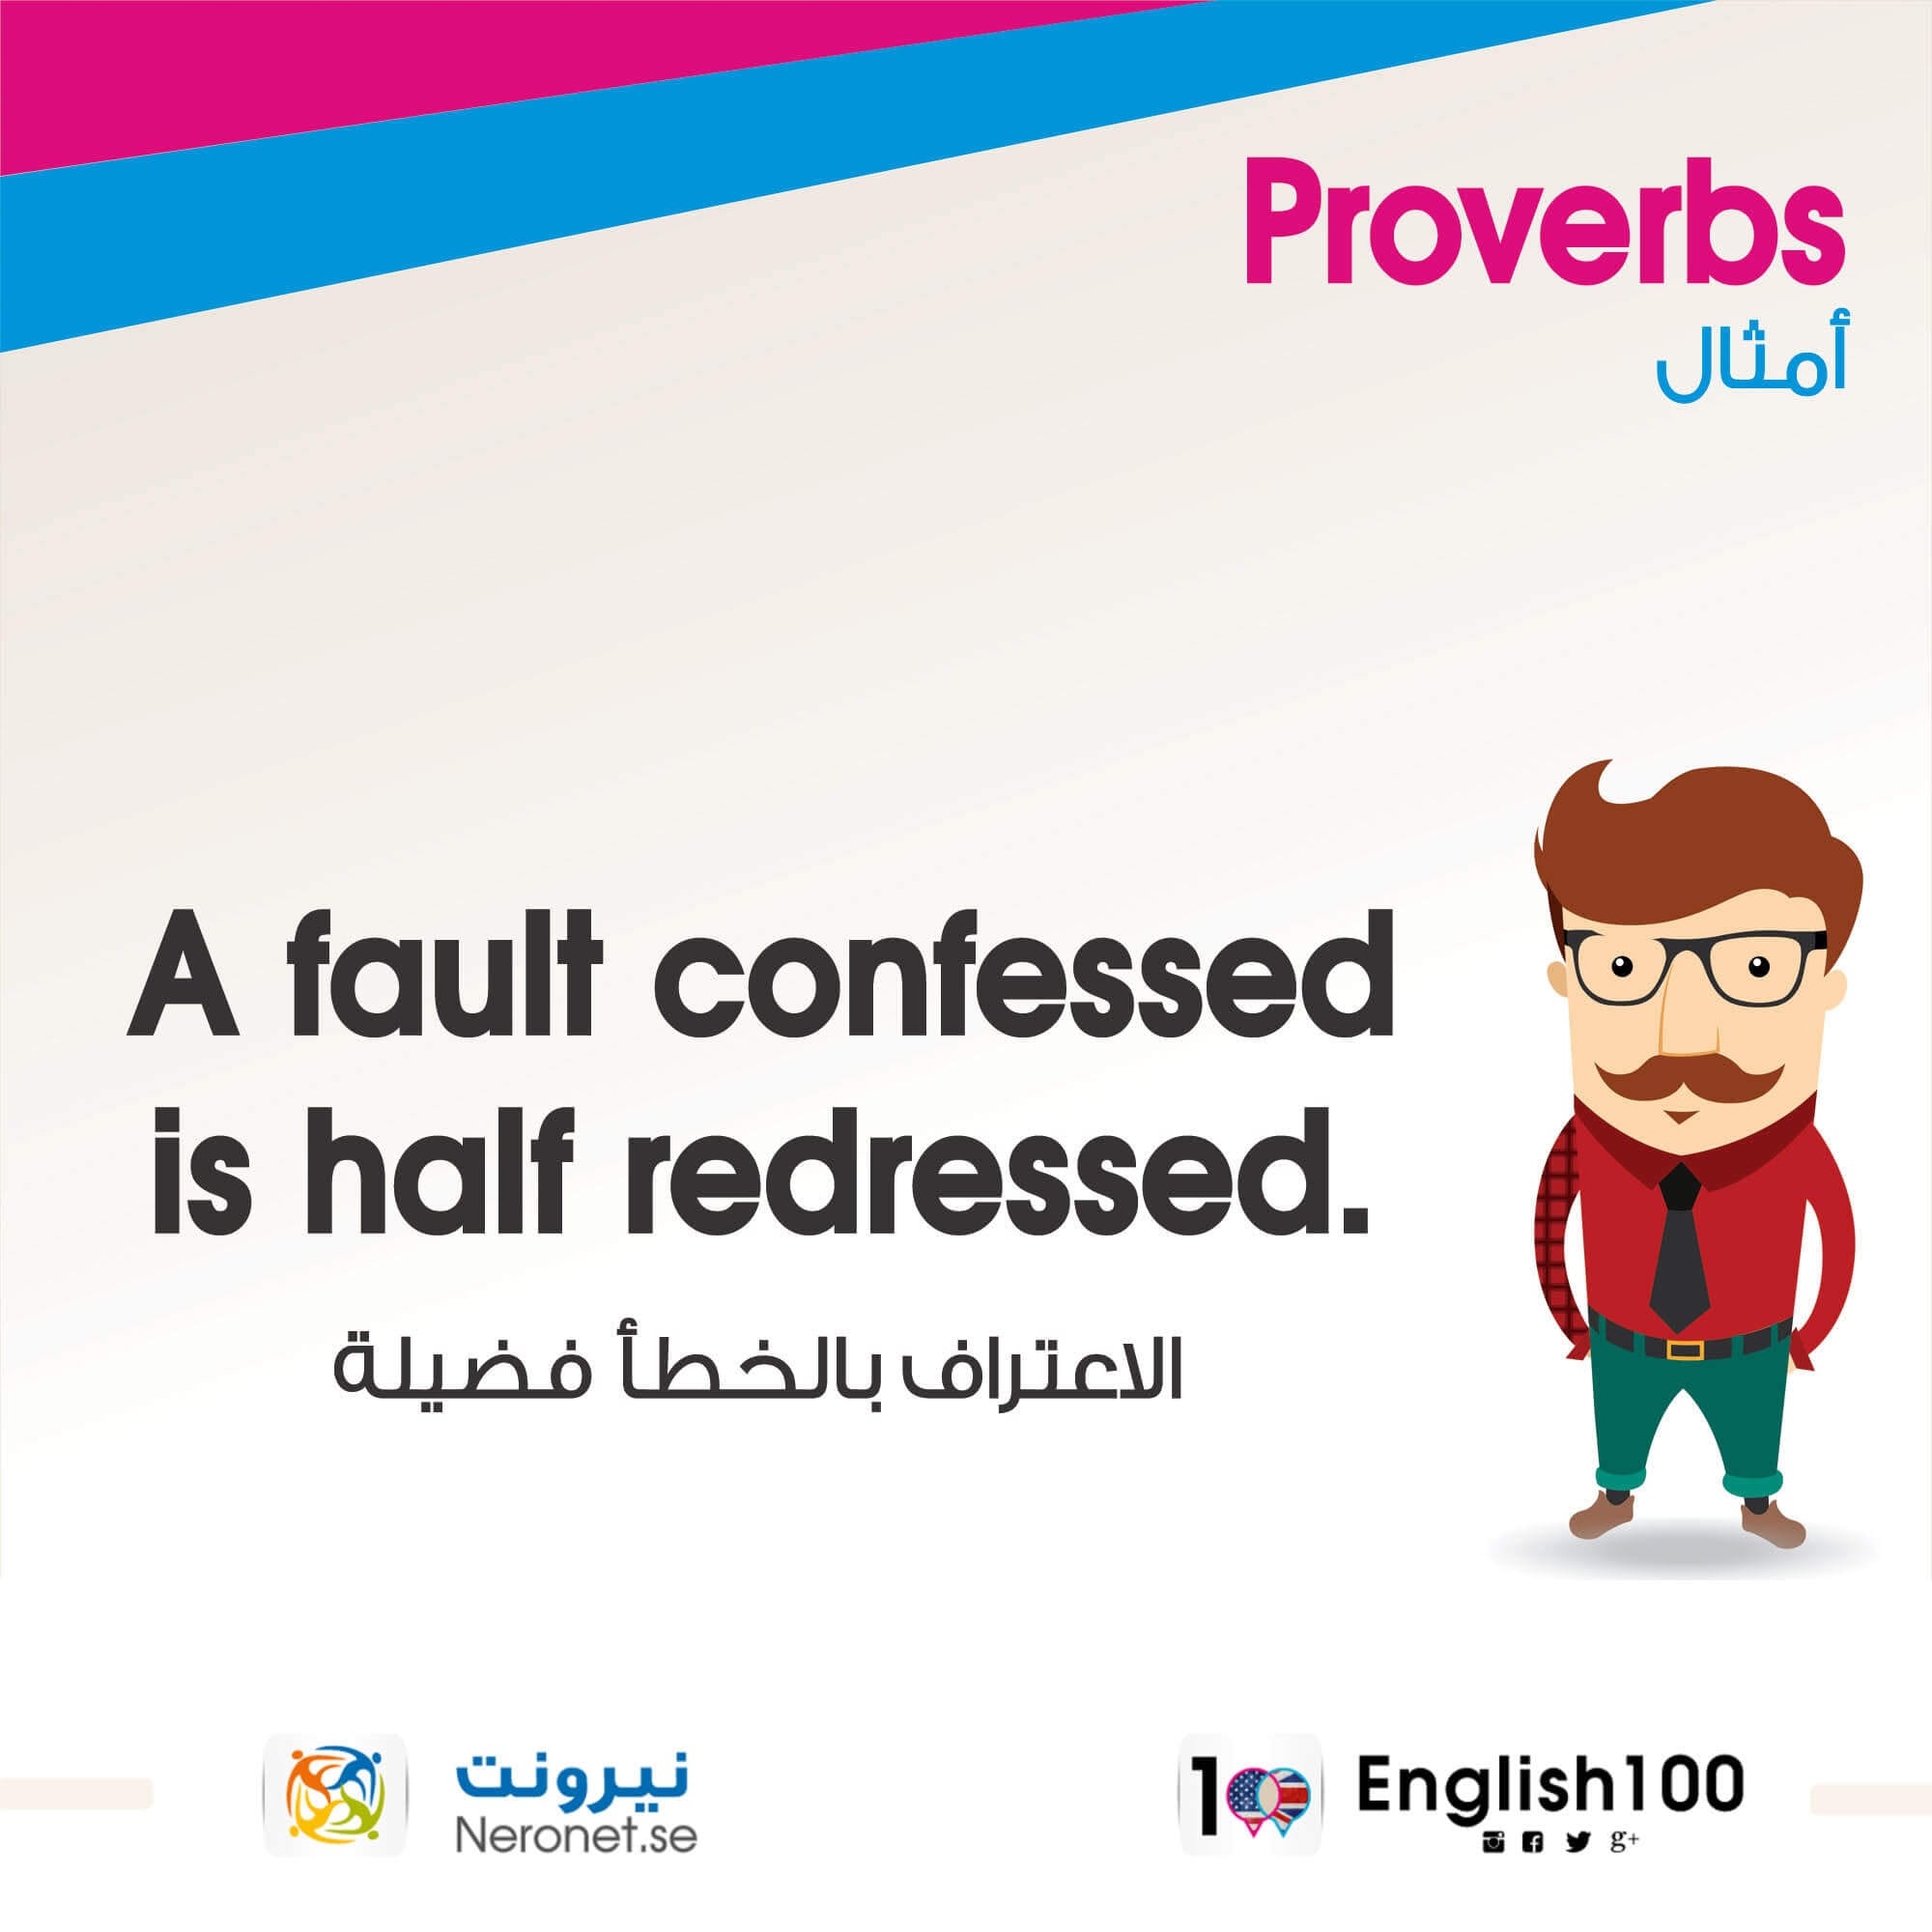 امثال انجليزية مترجمة للعربية